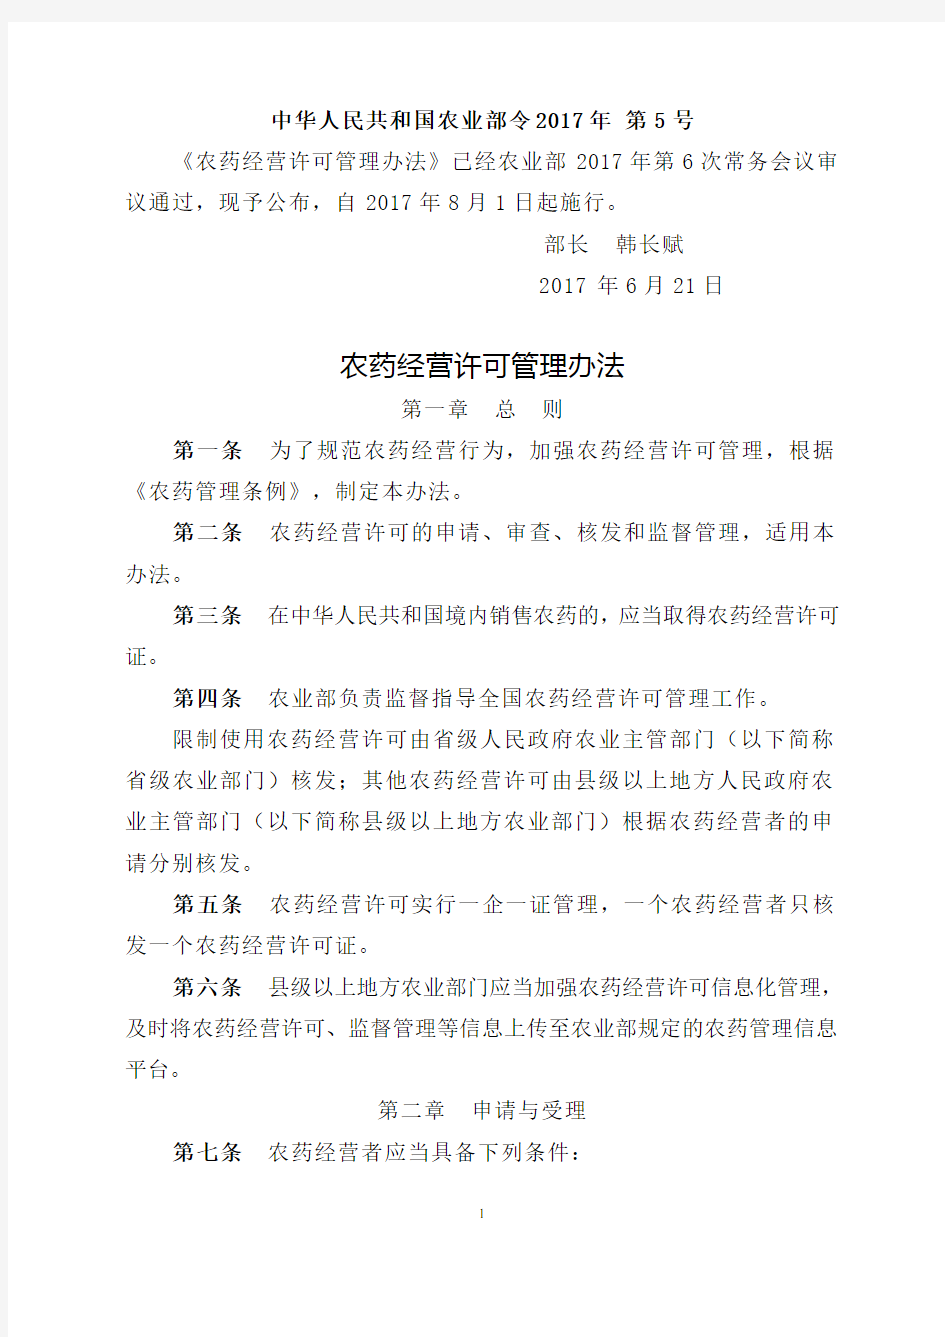 农药经营许可管理办法   中华人民共和国农业部令2017年 第5号